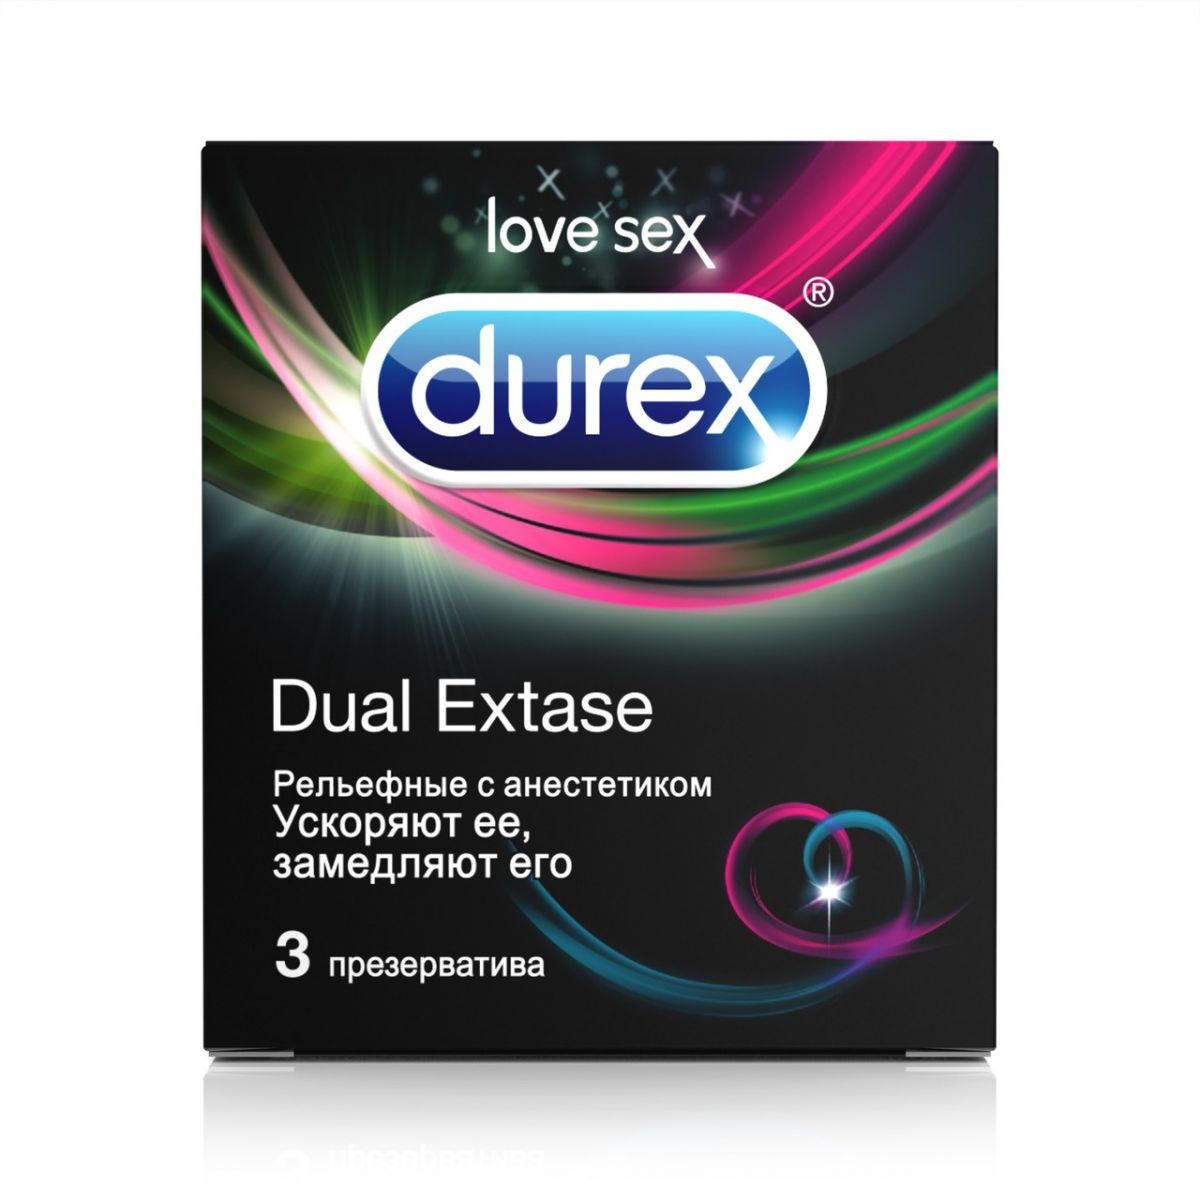 Рельефные презервативы с анестетиком Durex Dual Extase - 3 шт. от Durex